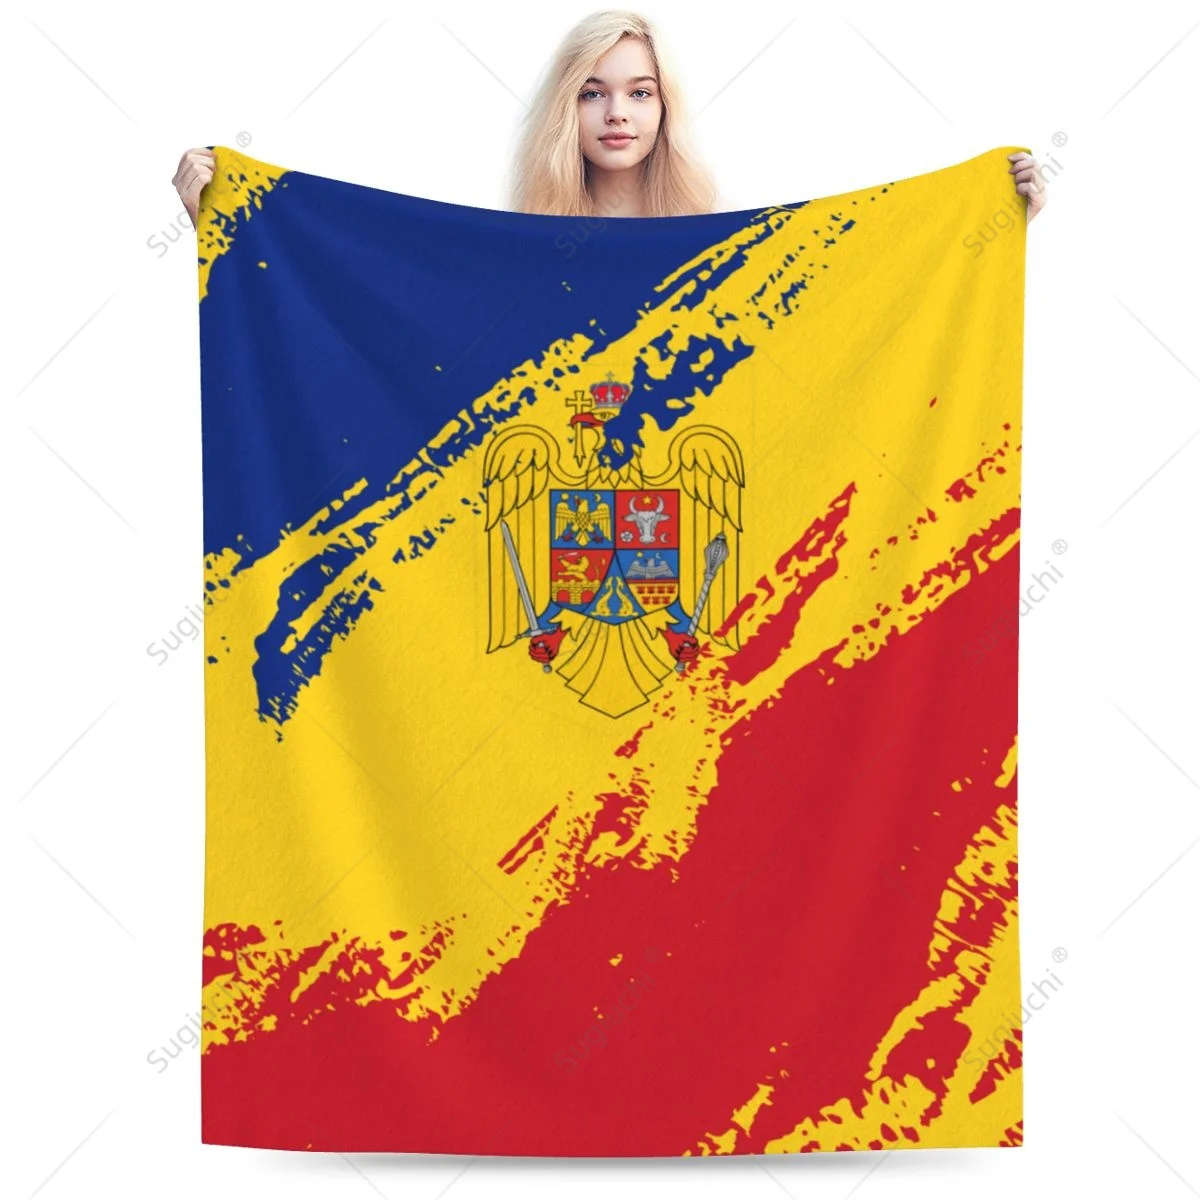 

Одеяло с флагом Румынии, цветной фланелевый многофункциональный чехол на диван для кемпинга, сохраняет тепло